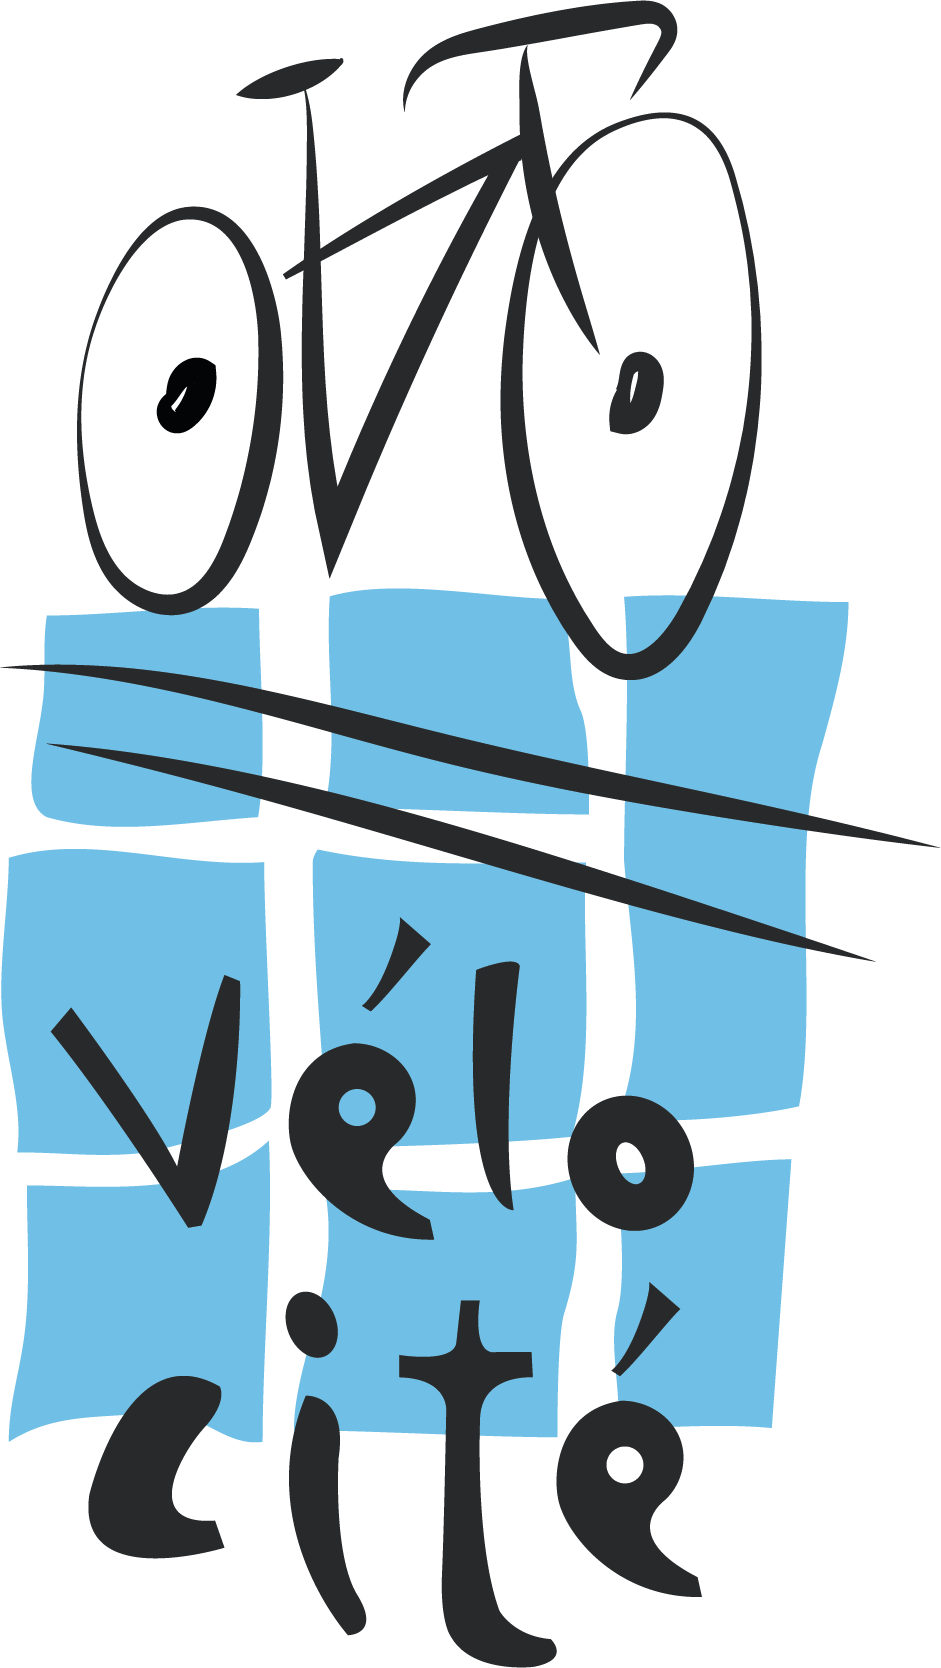 VELO-CITE-19-01-16-logo-vectorise-couleur.png